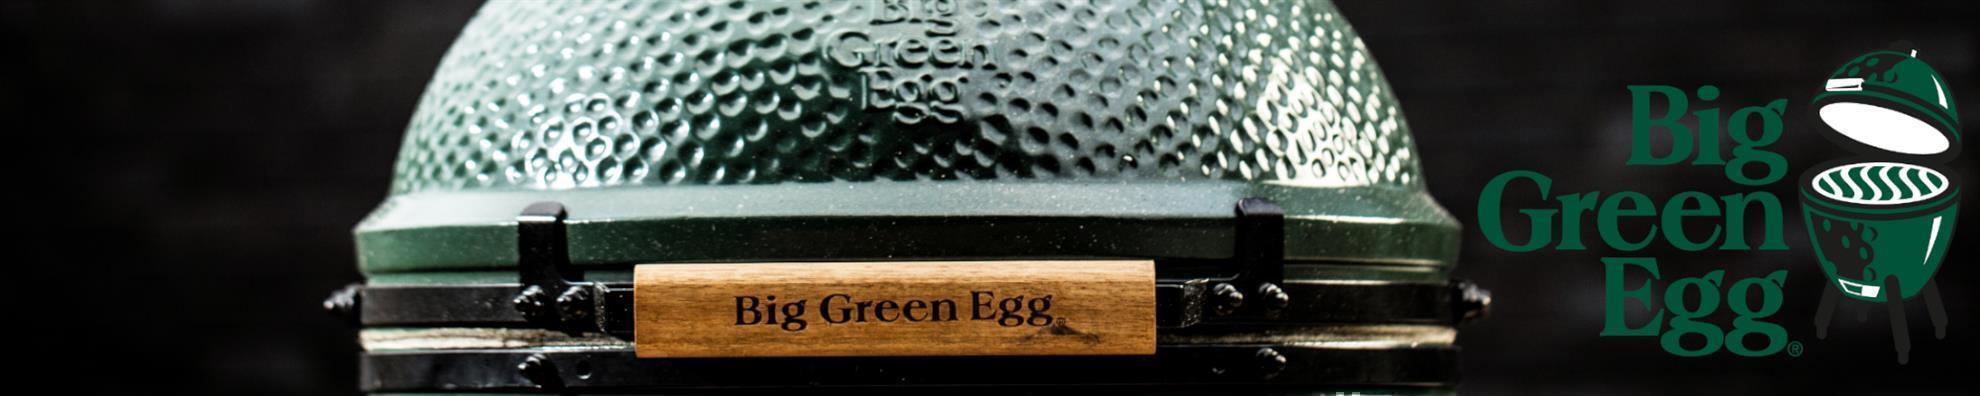 Big Green Egg - Looftlighter